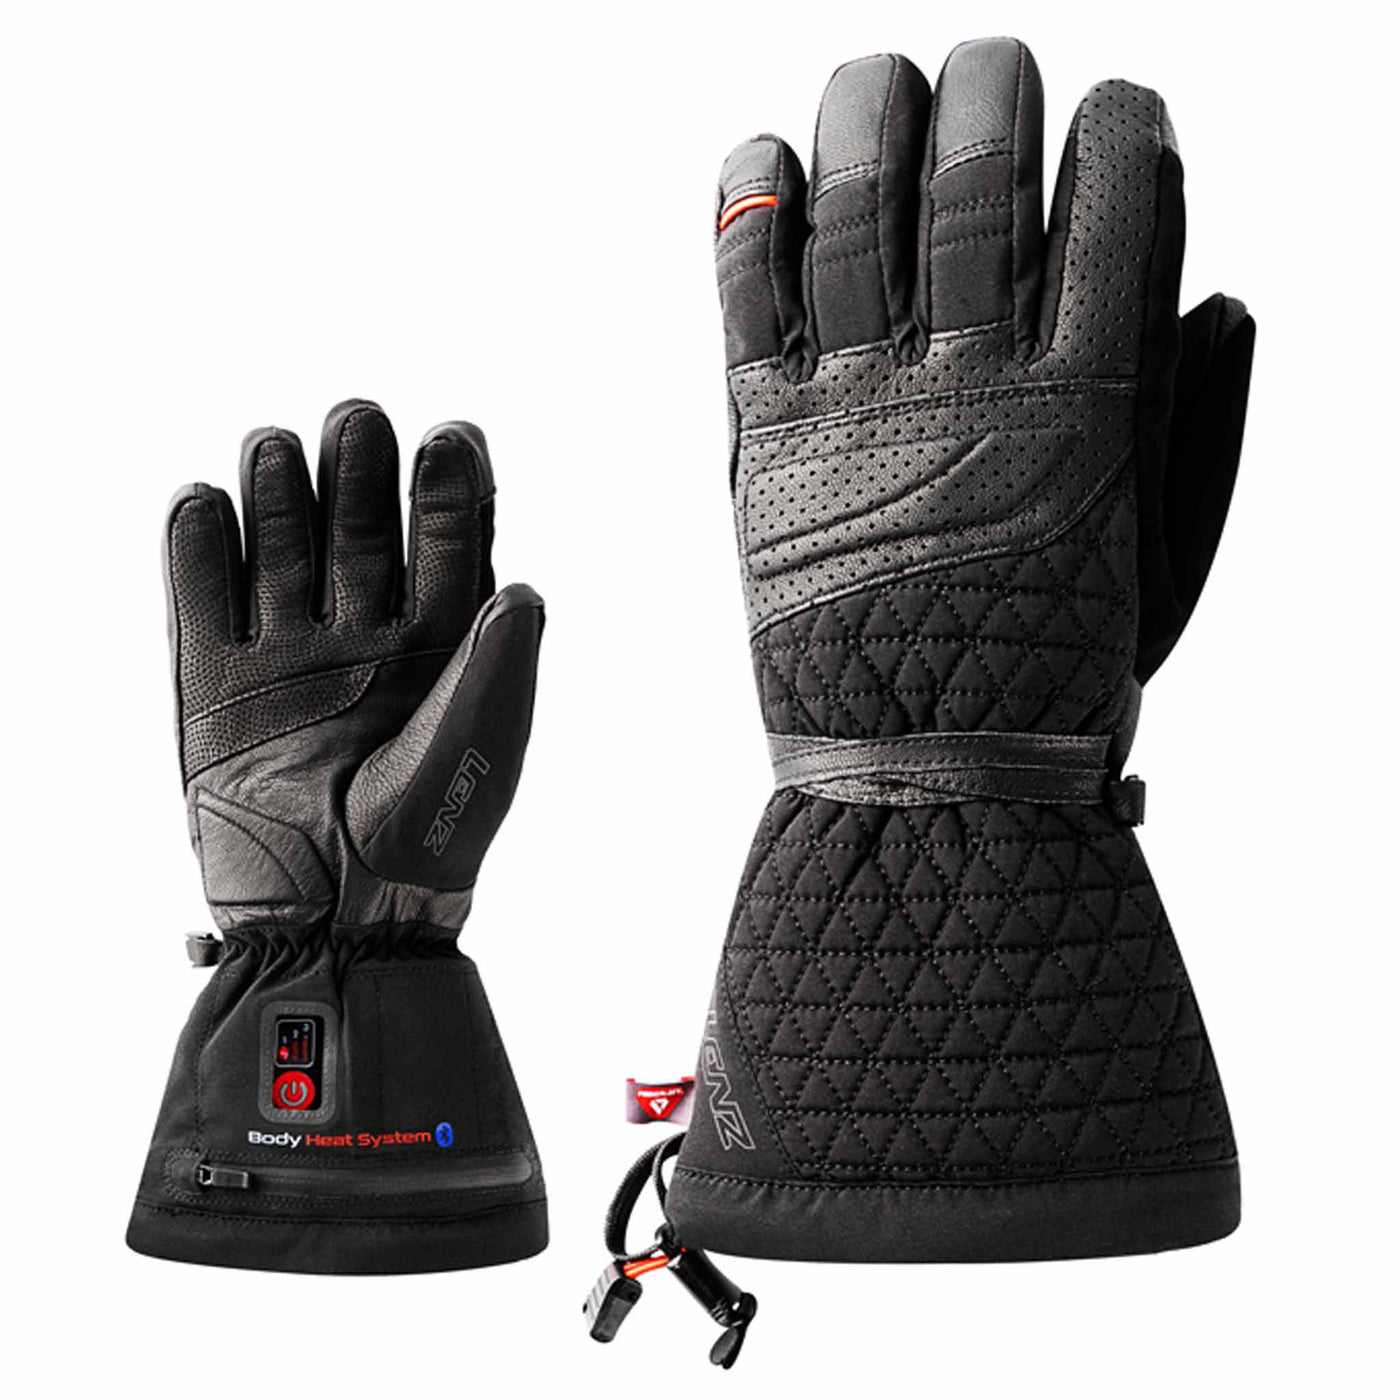 aus Retoure: Lenz Heat Glove 6.0 Finger Heizhandschuhe (Damen) OHNE AKKU